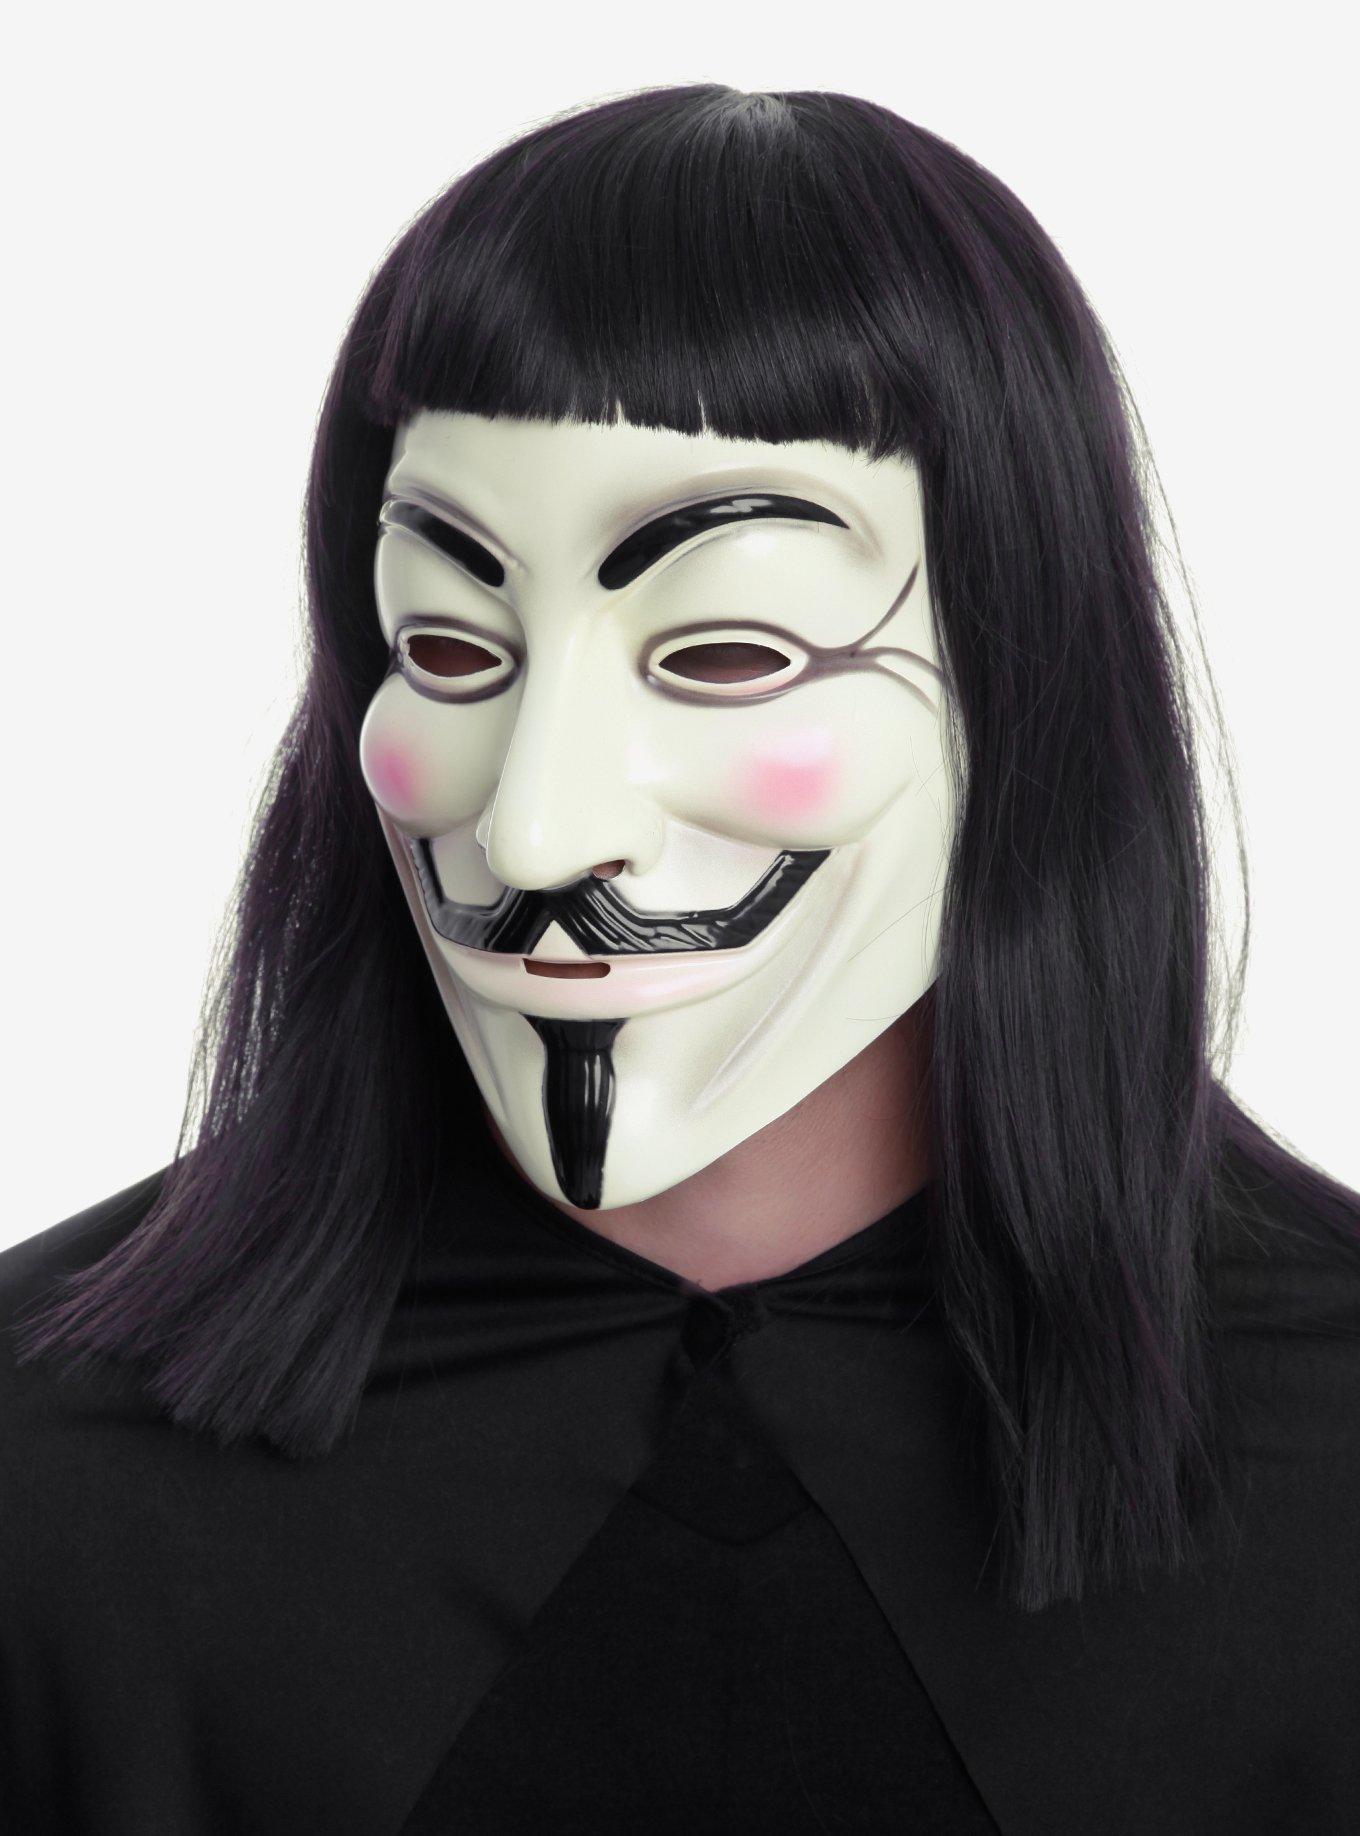 V for Vendetta mask